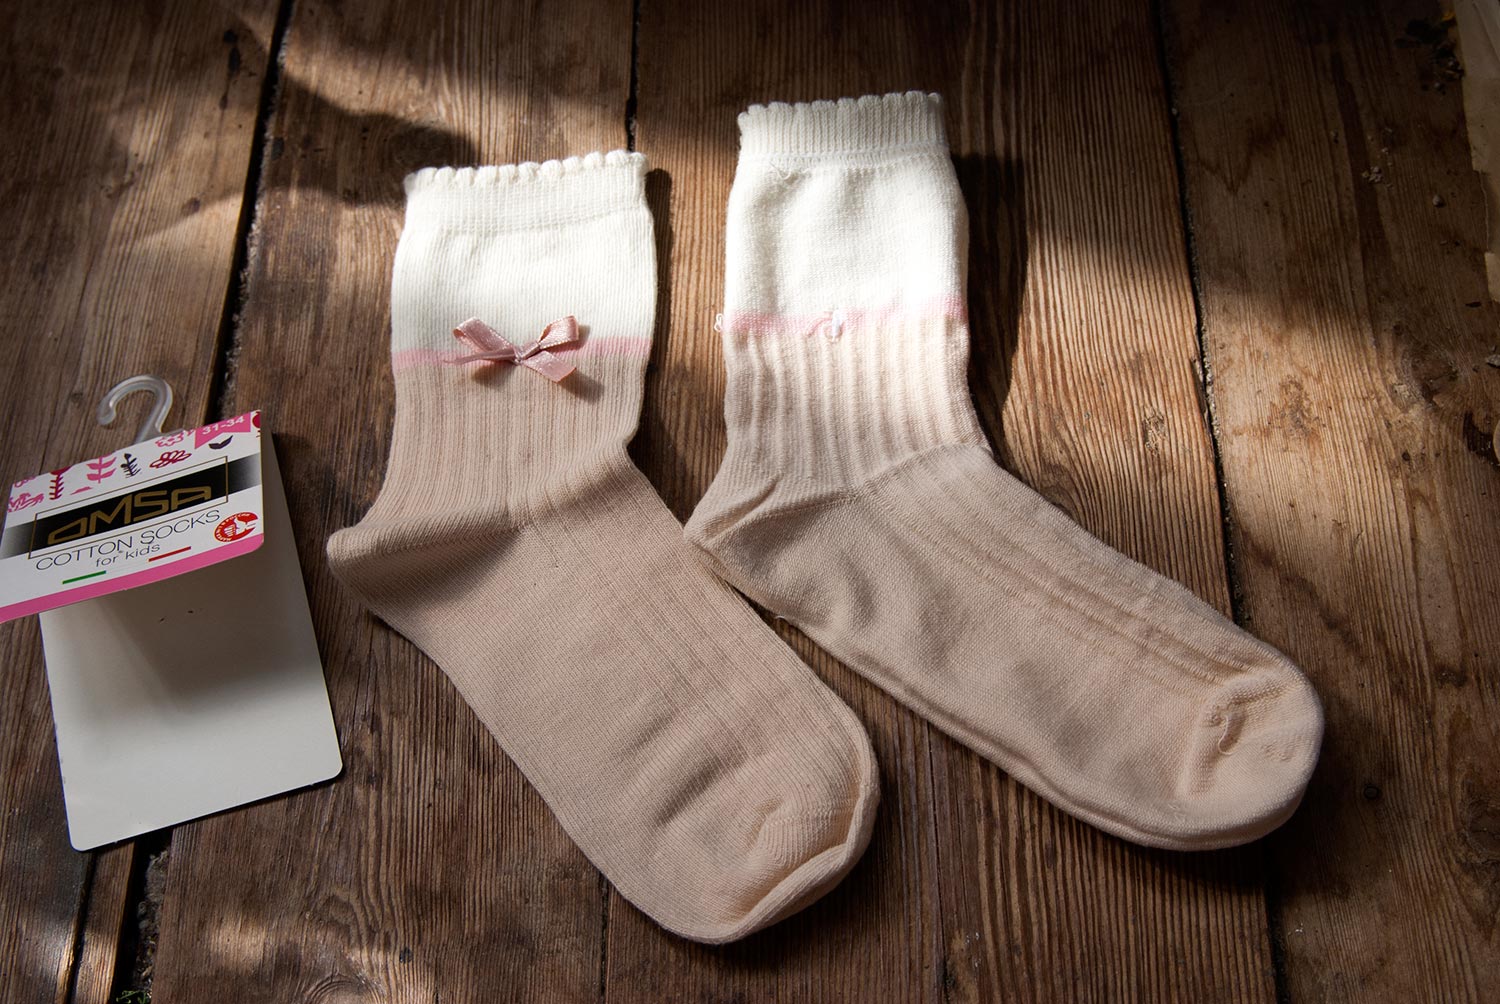 Детские носки с бантиками (носок справа вывернут на изнаночную сторону). Изображение: ©bracatuS